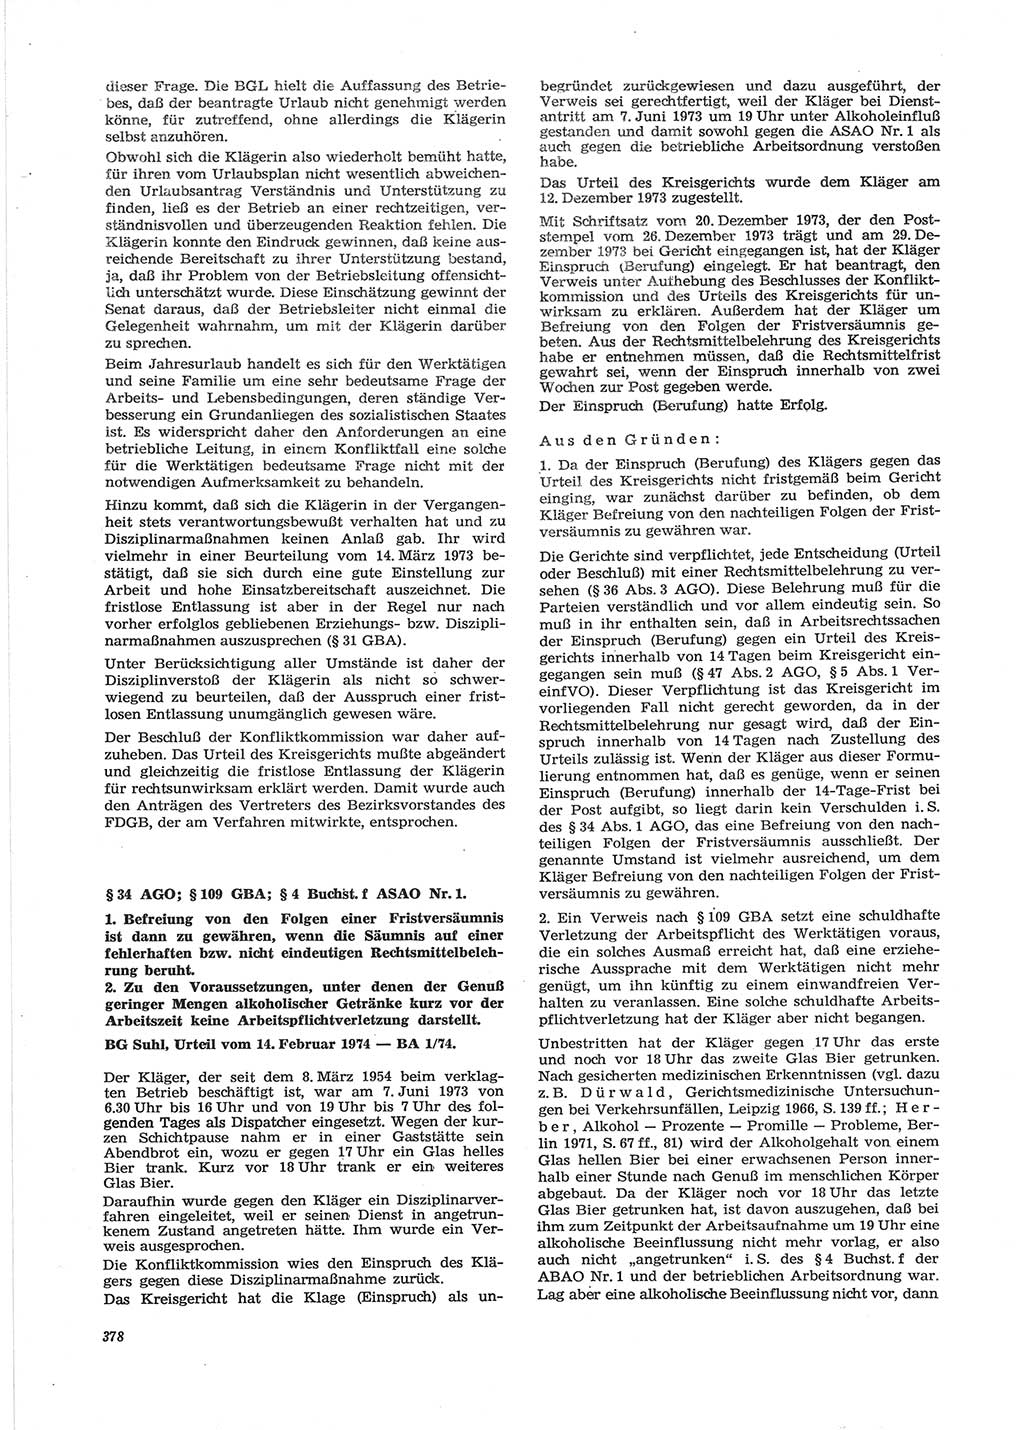 Neue Justiz (NJ), Zeitschrift für Recht und Rechtswissenschaft [Deutsche Demokratische Republik (DDR)], 28. Jahrgang 1974, Seite 378 (NJ DDR 1974, S. 378)